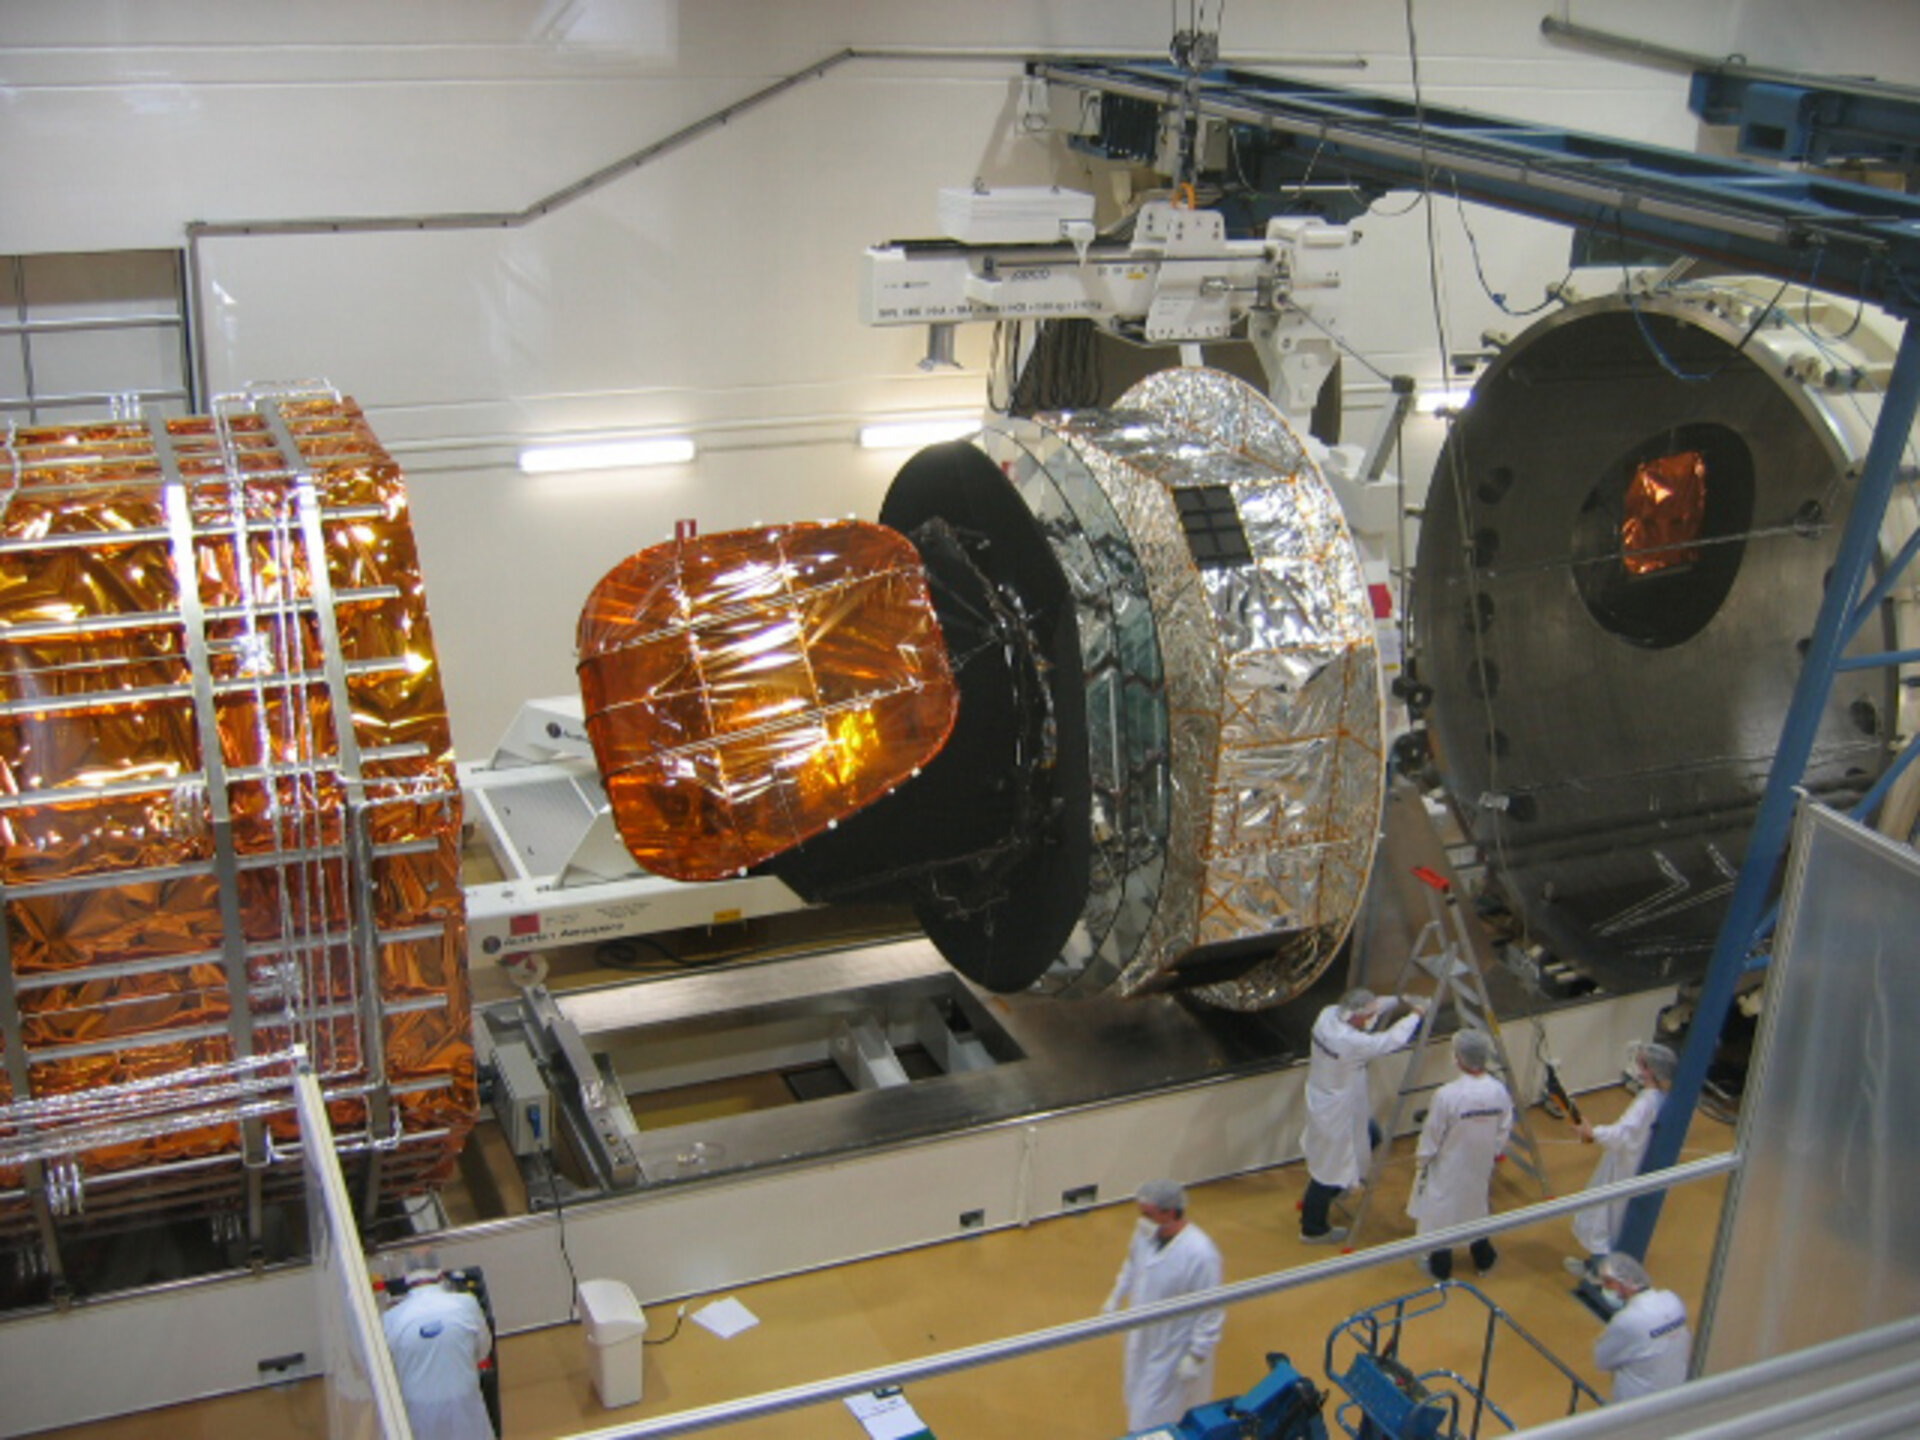 Planck is de eerste volledige satelliet die in het CSL wordt getest